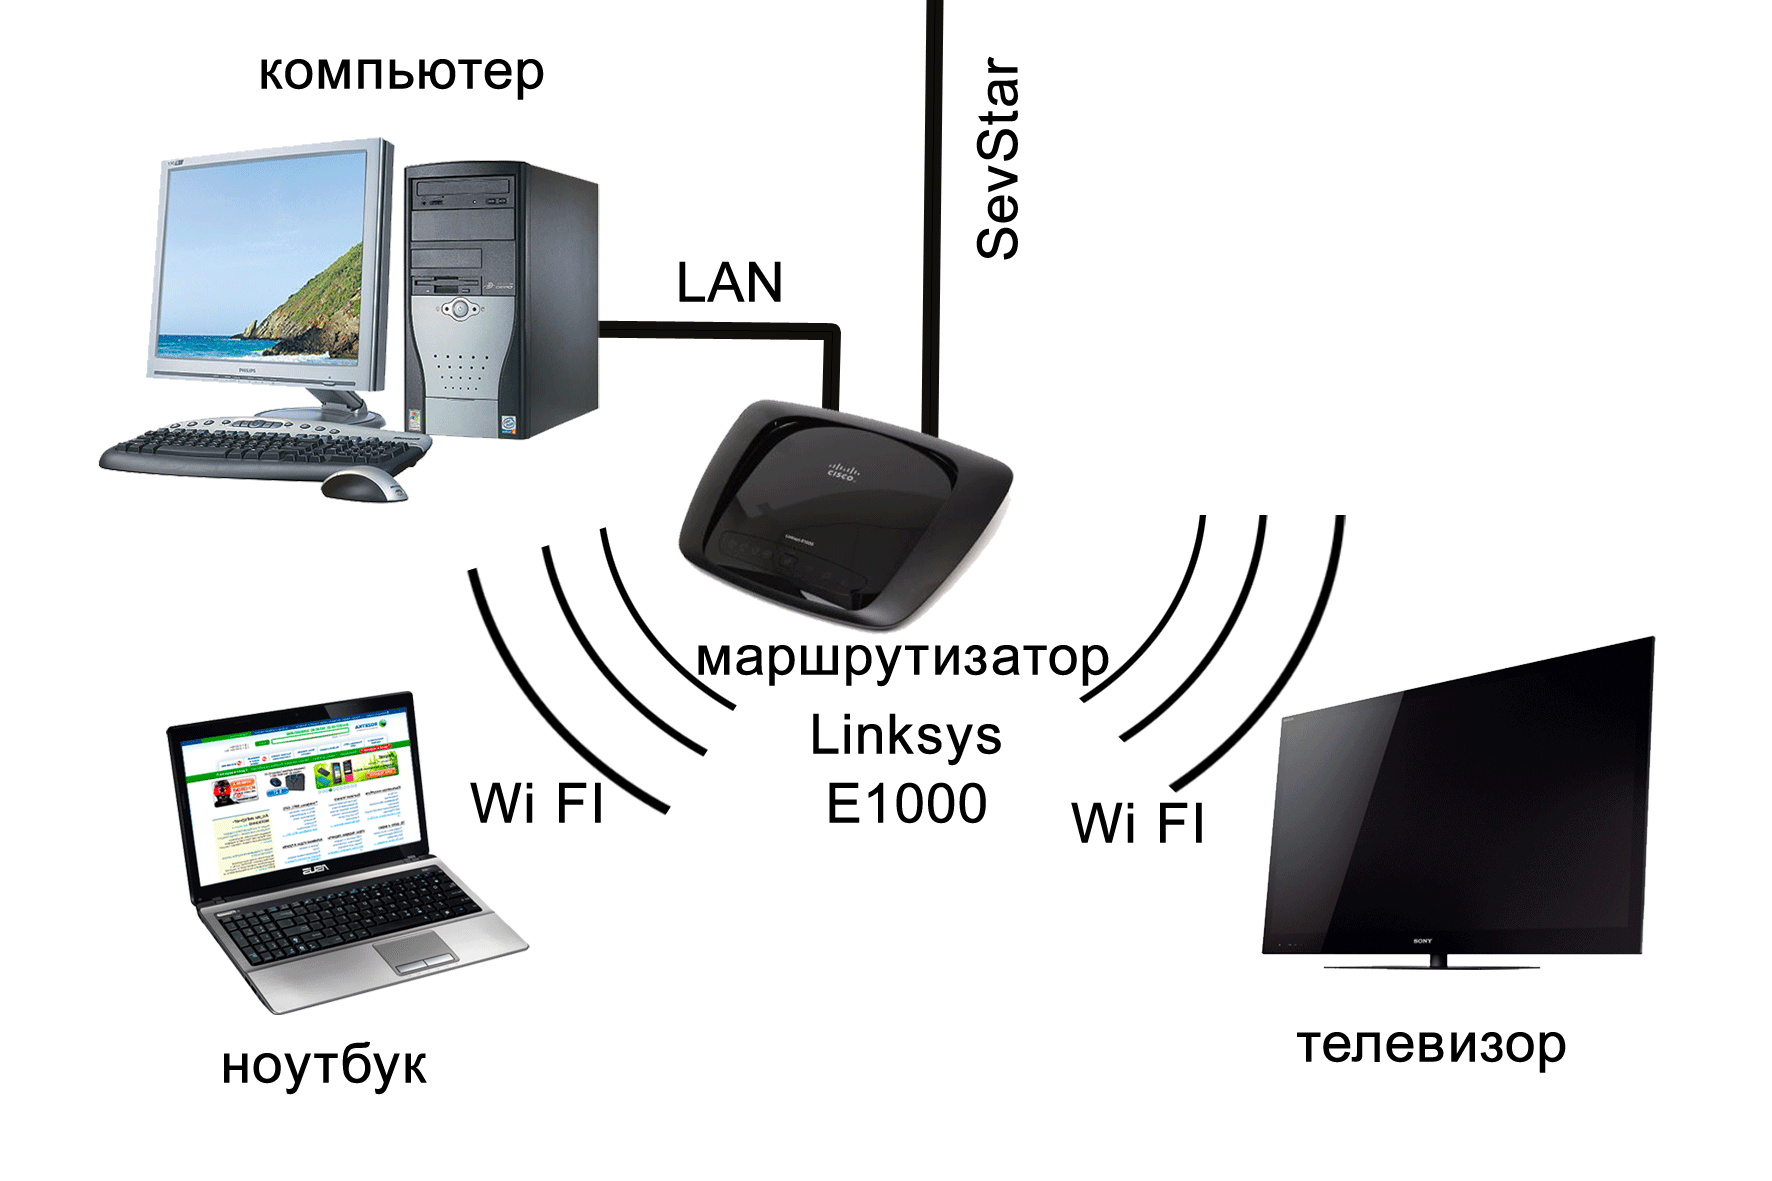 Инструкция по подключению телевизора к ноутбуку по беспроводной Wi-Fi сети Просмотр фильмов на телевизоре по Wi-Fi